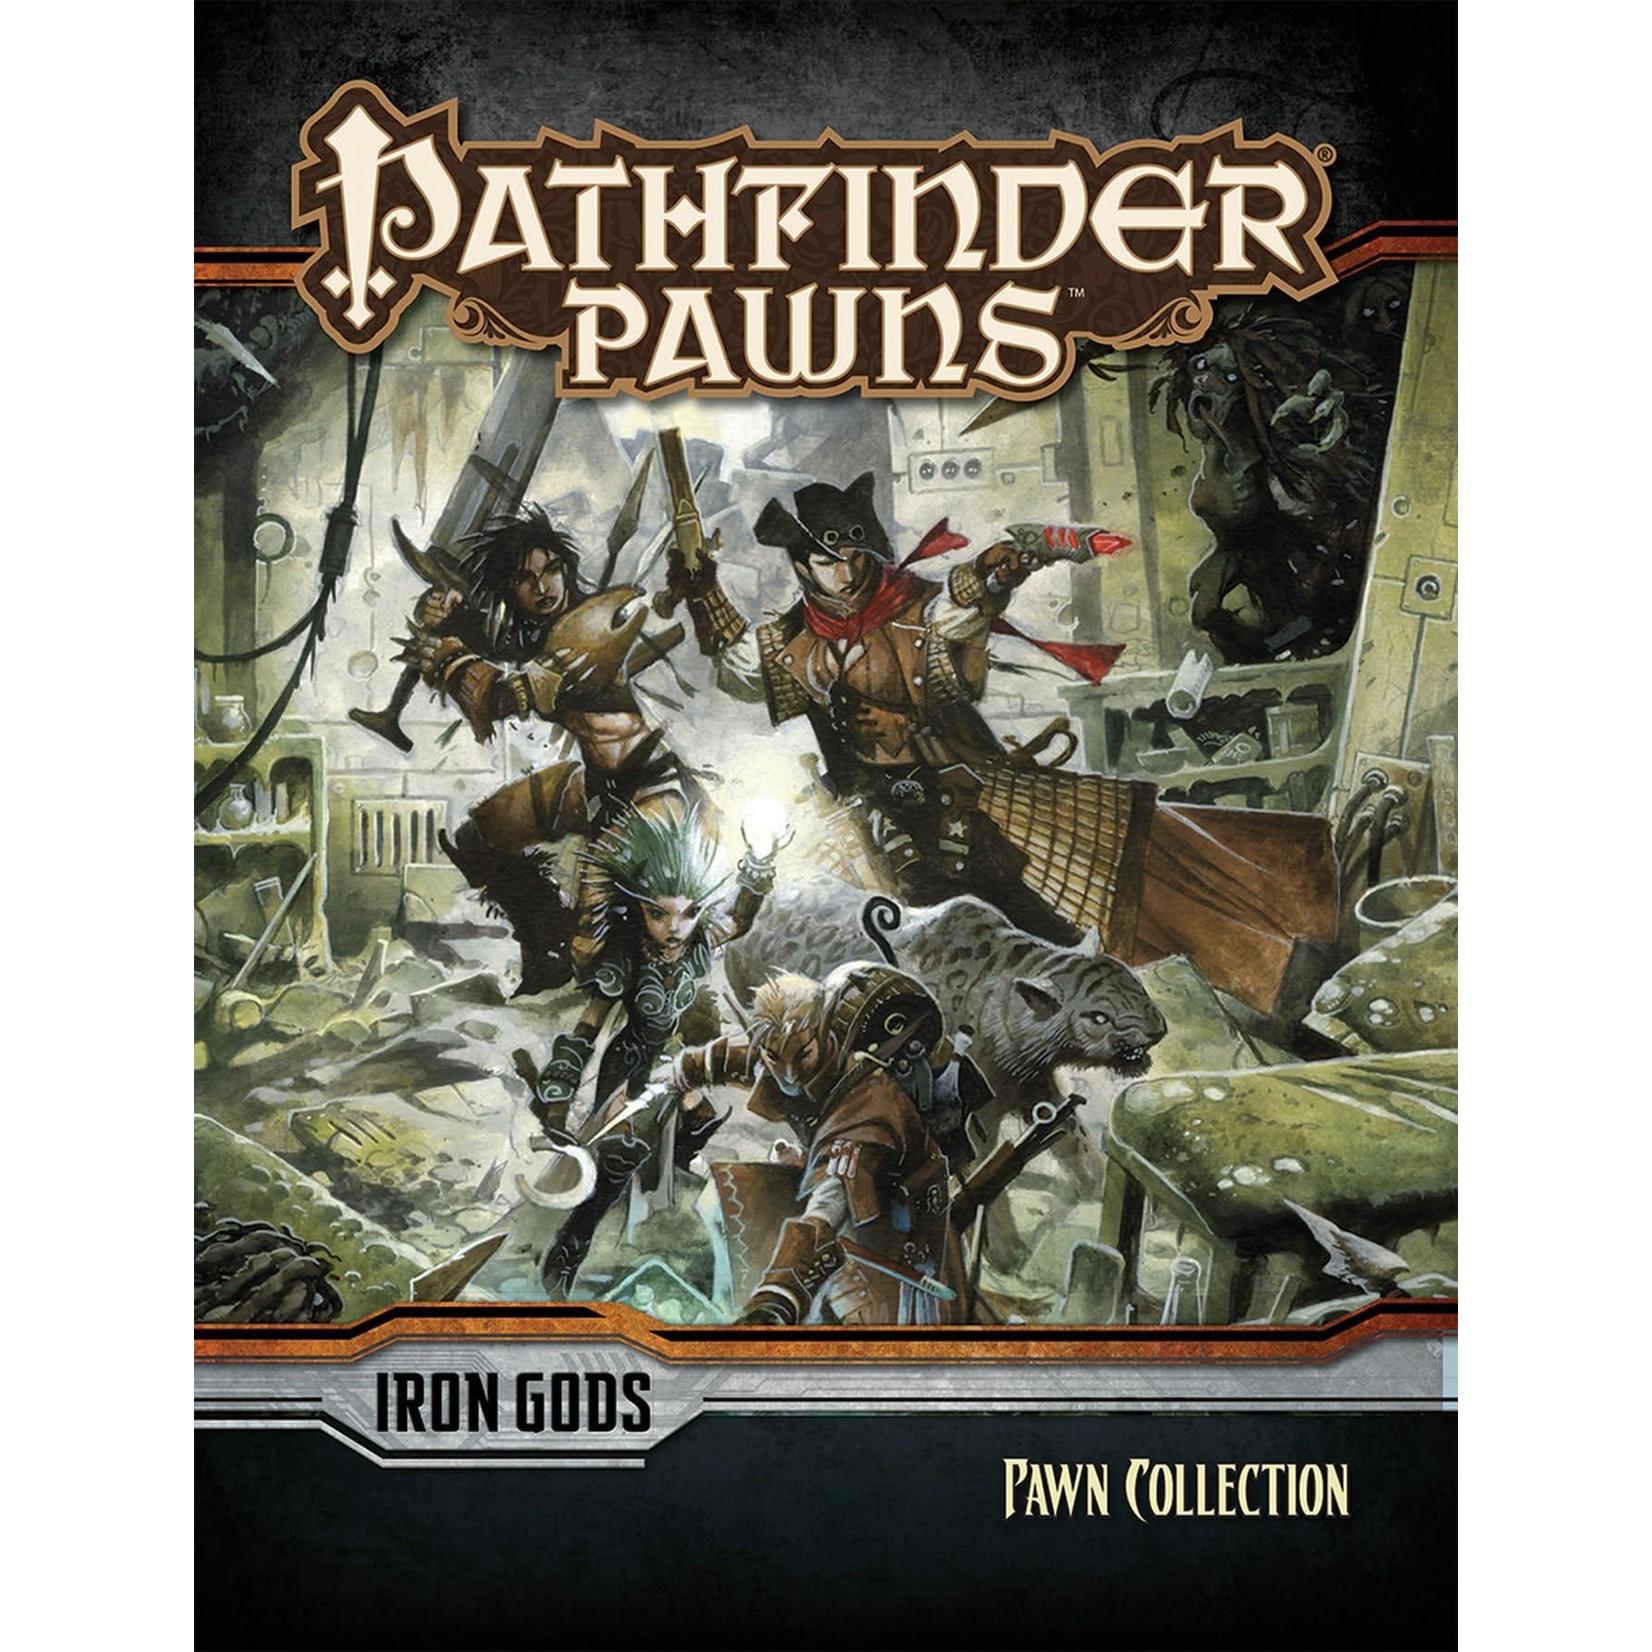 Pathfinder Pawns: Iron Gods